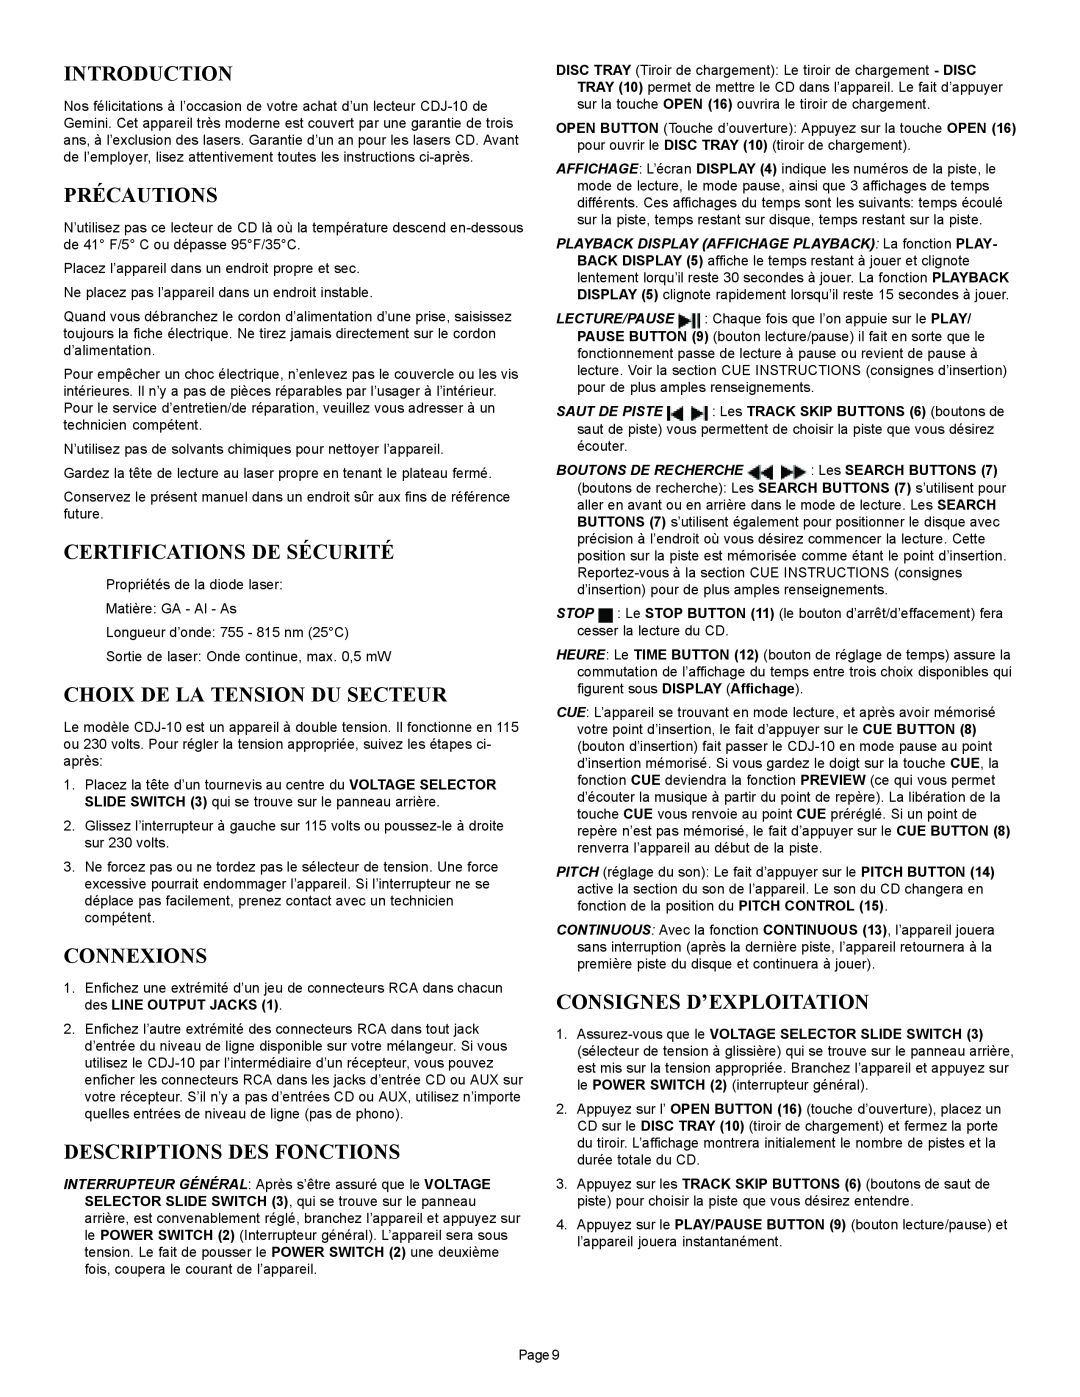 Gemini CDJ-10 manual Précautions, Certifications De Sécurité, Choix De La Tension Du Secteur, Connexions, Introduction 